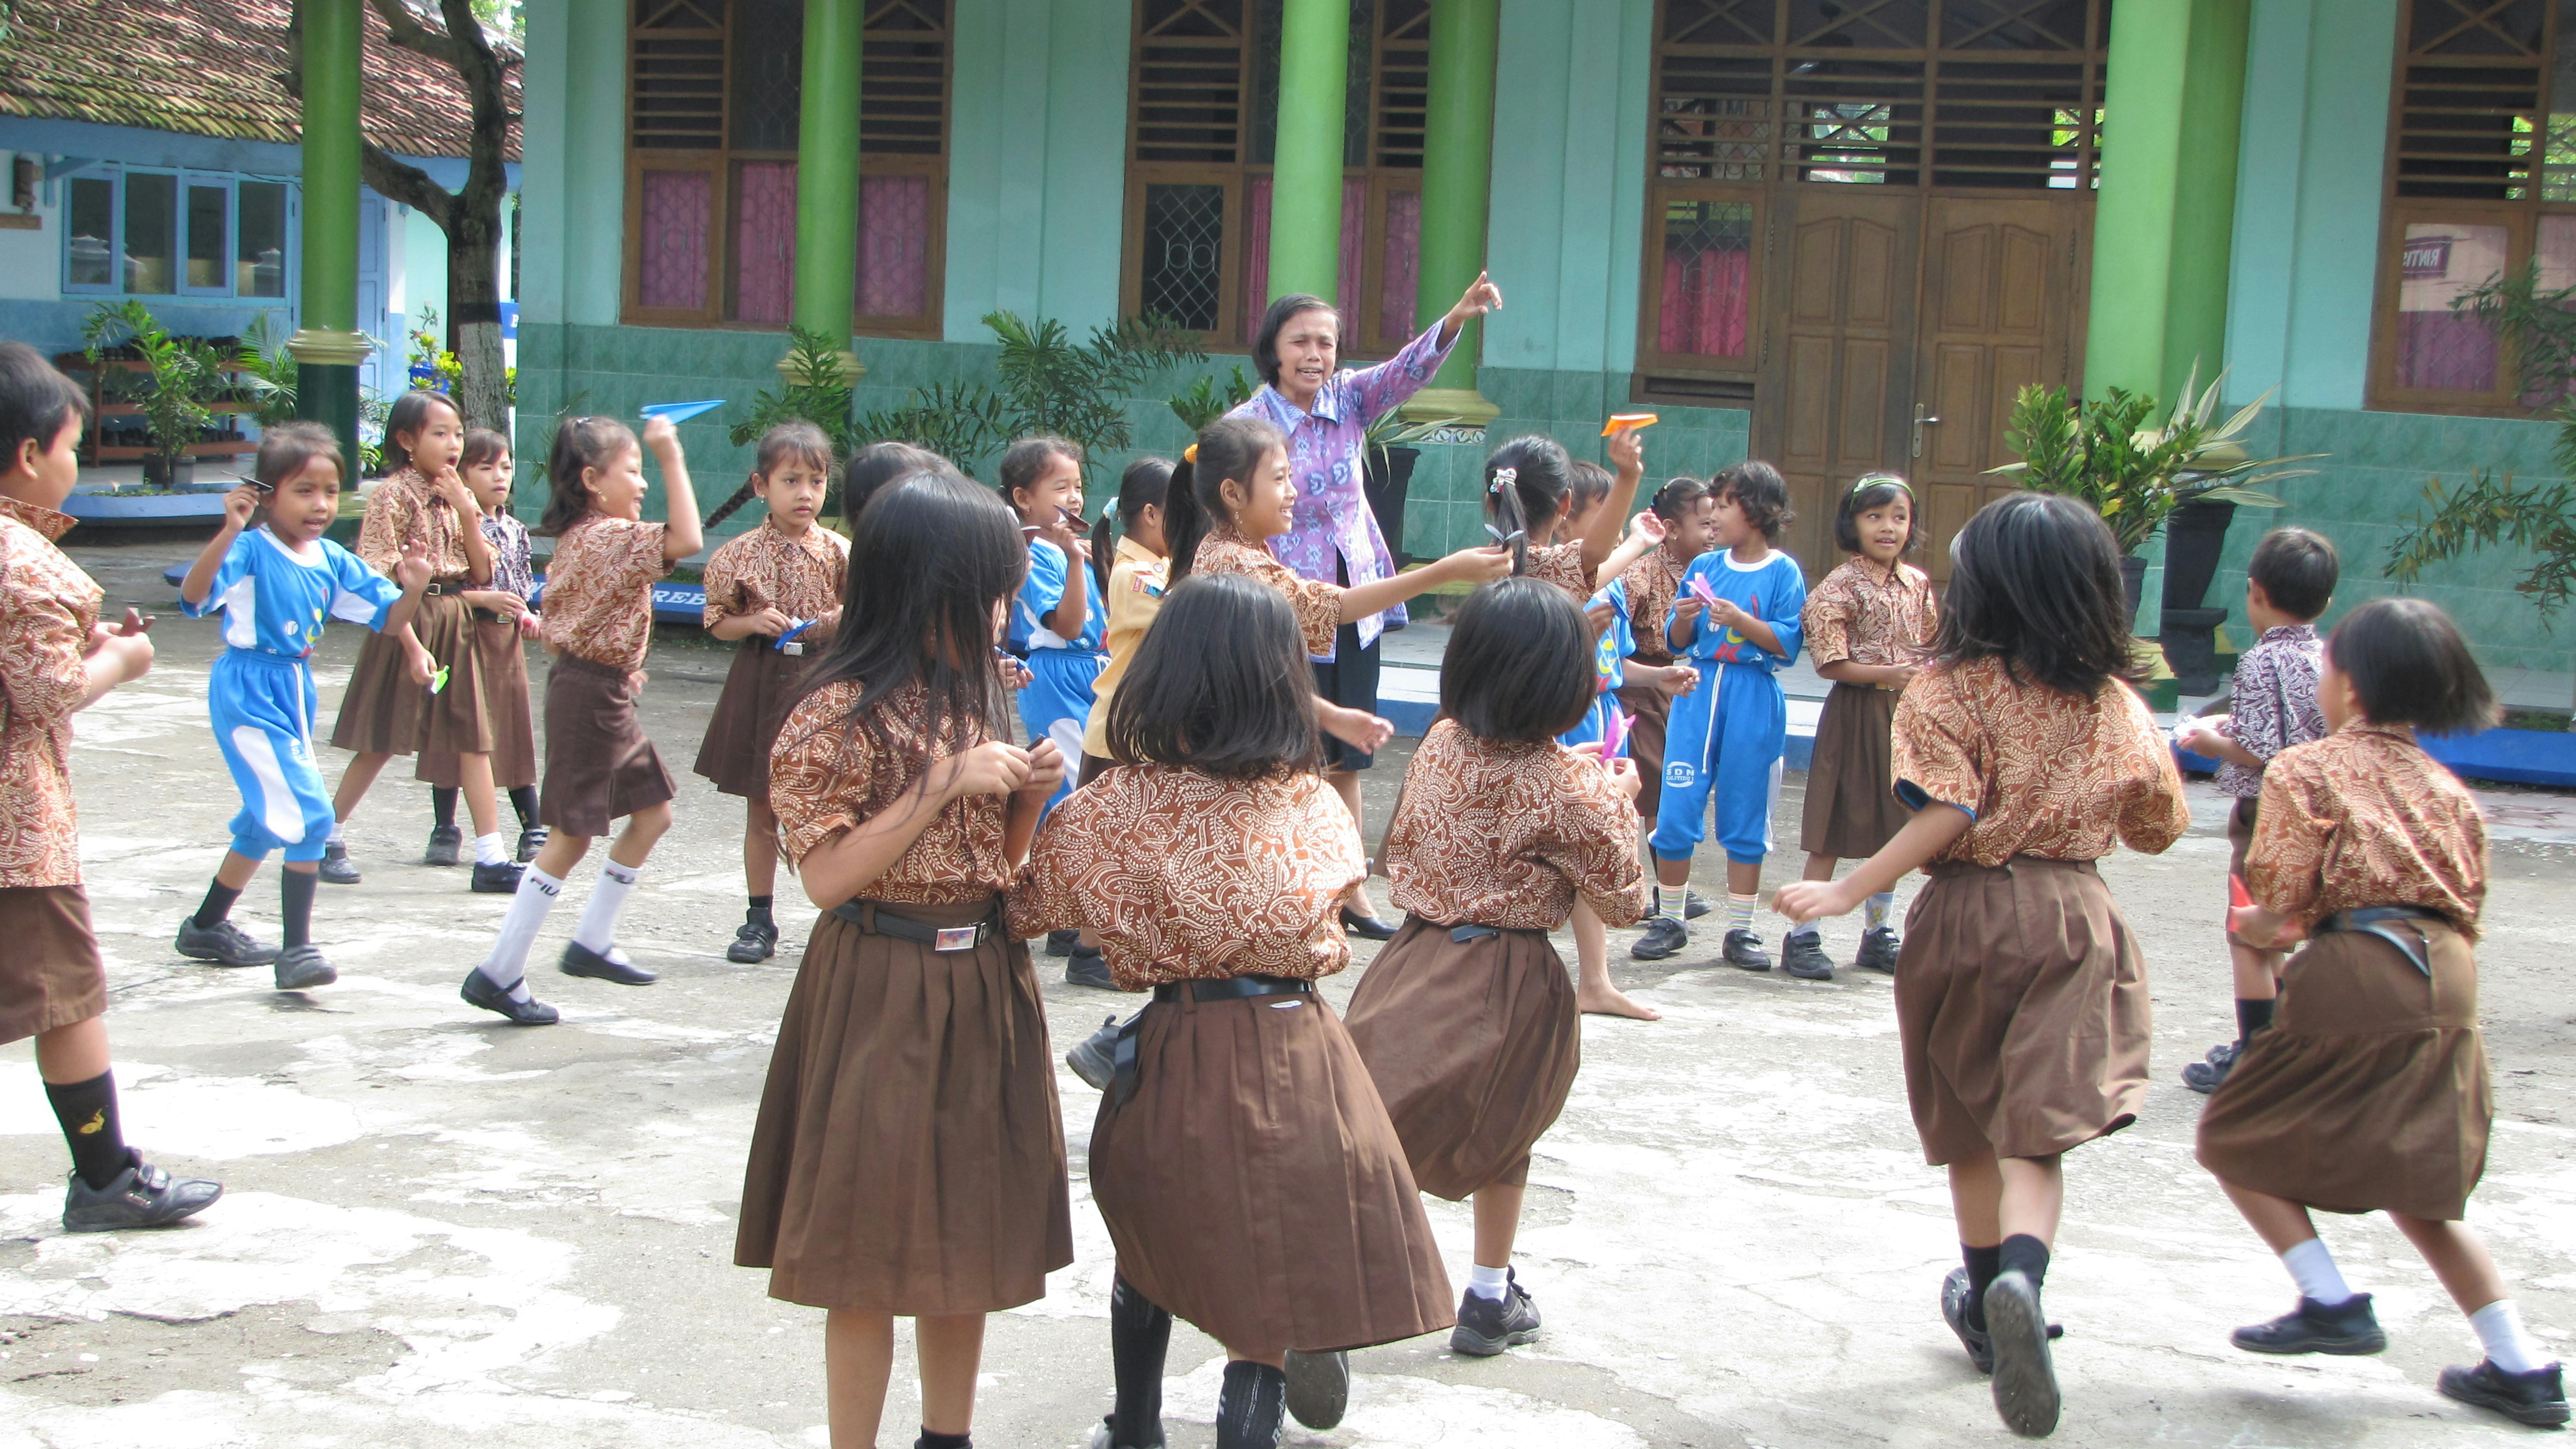 Studenti indonesiani fanno valore gli aeroplanini di carta nel cortile della loro scuola. ©Alessandra Ficarra